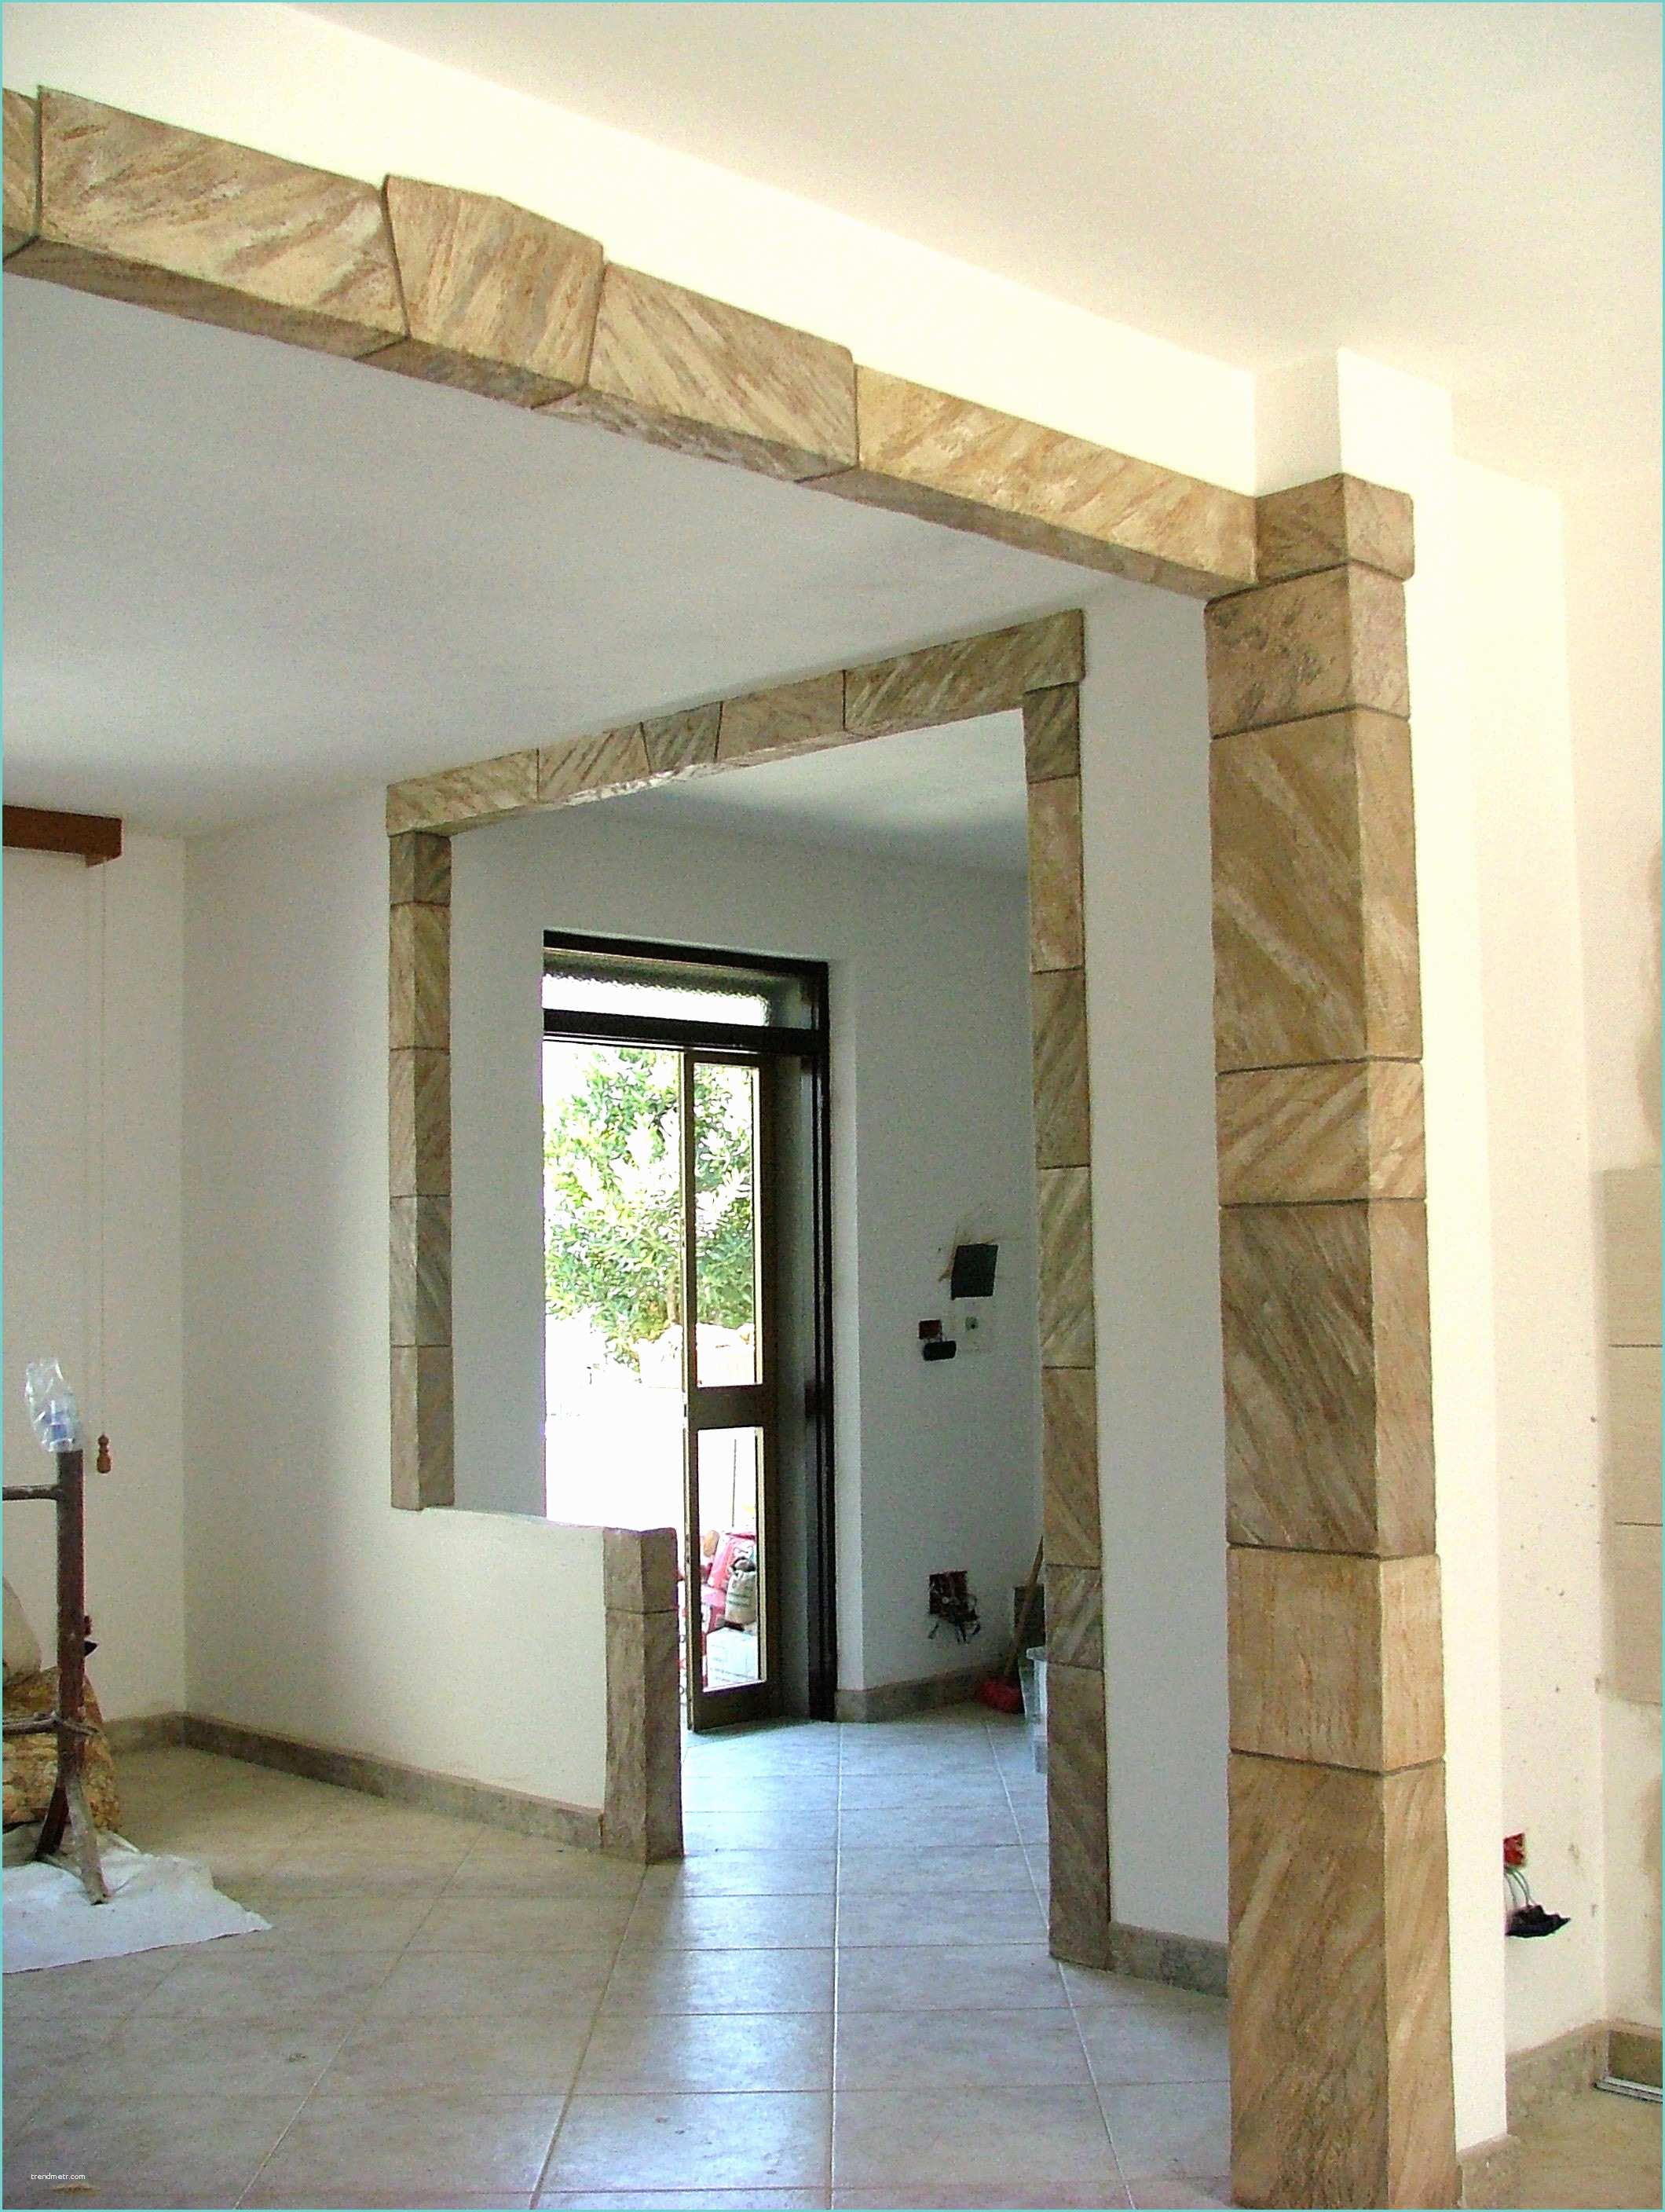 Pannelli decorativi polistirolo per soffitti prezzi for Pannelli decorativi in polistirolo pareti interne